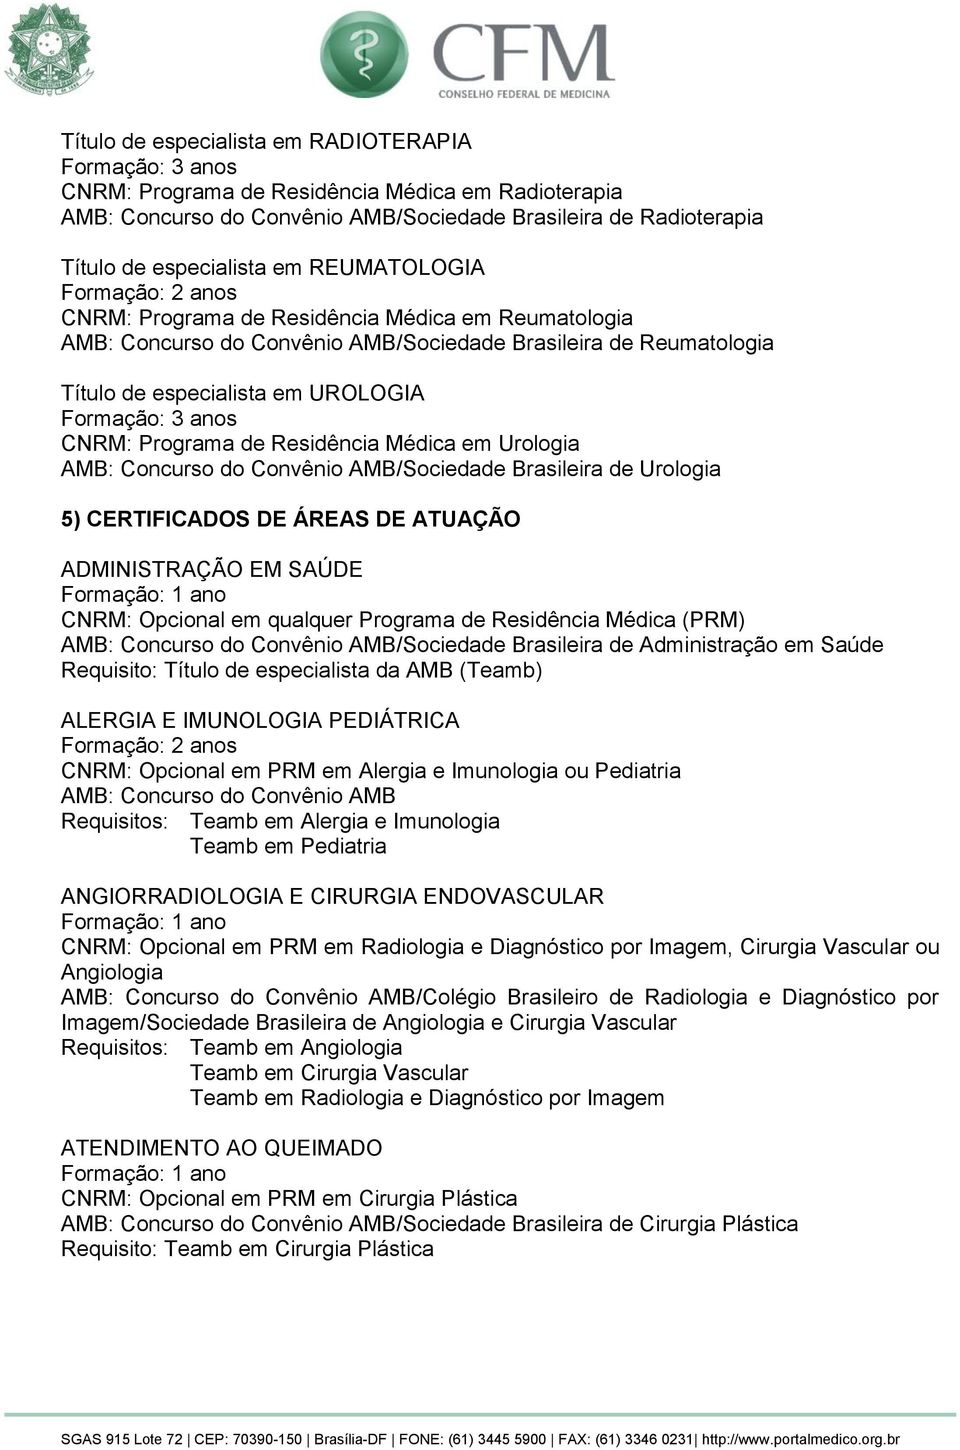 Urologia AMB: Concurso do Convênio AMB/Sociedade Brasileira de Urologia 5) CERTIFICADOS DE ÁREAS DE ATUAÇÃO ADMINISTRAÇÃO EM SAÚDE CNRM: Opcional em qualquer Programa de Residência Médica (PRM) AMB: